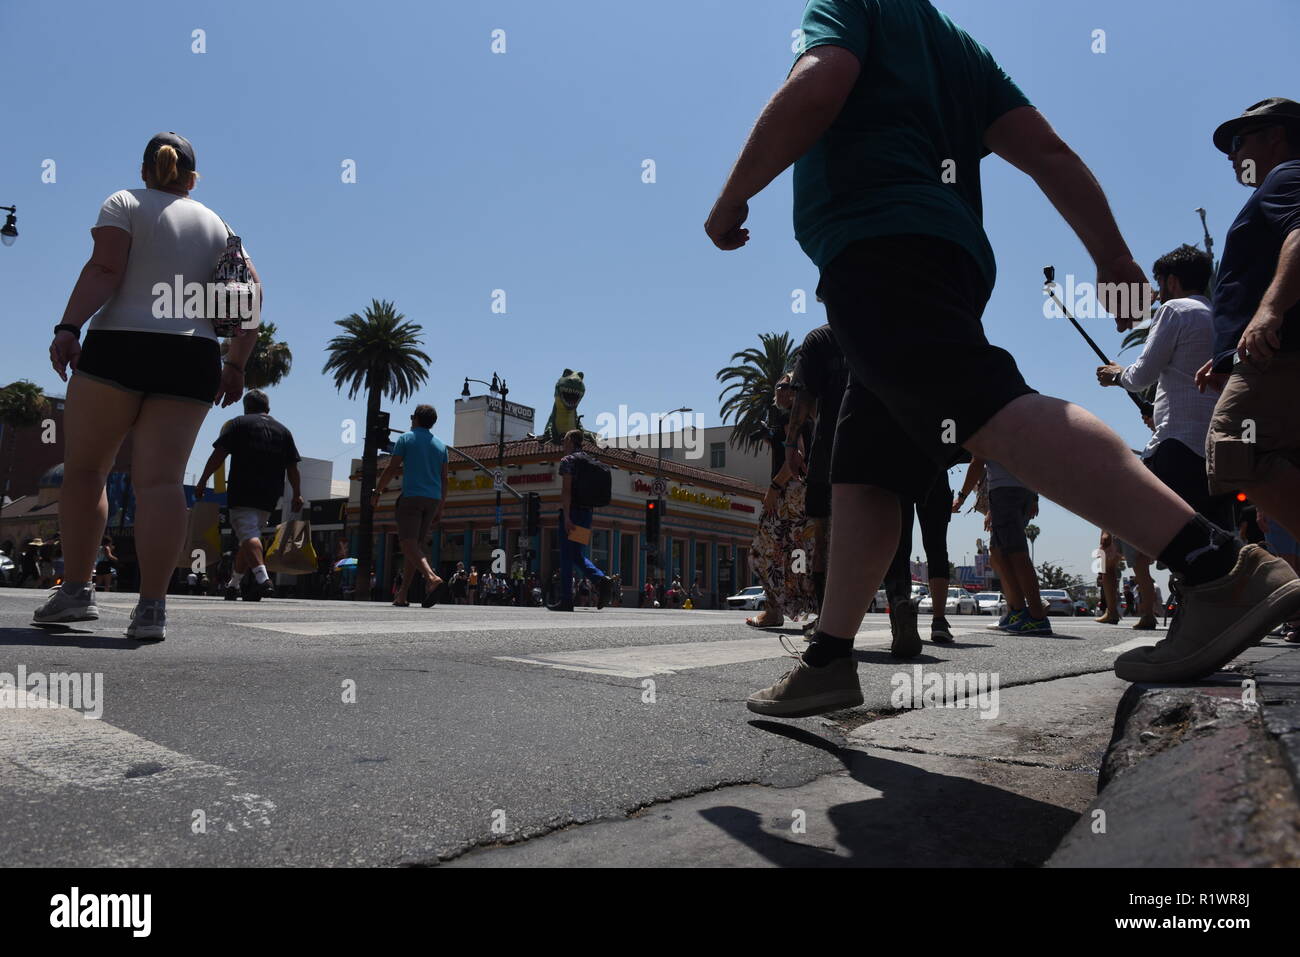 HOLLYWOOD - August 7, 2018: die Menschen überqueren die Straße von niedrigen Winkel Sicht auf dem Hollywood Blvd. in Hollywood, CA. Stockfoto